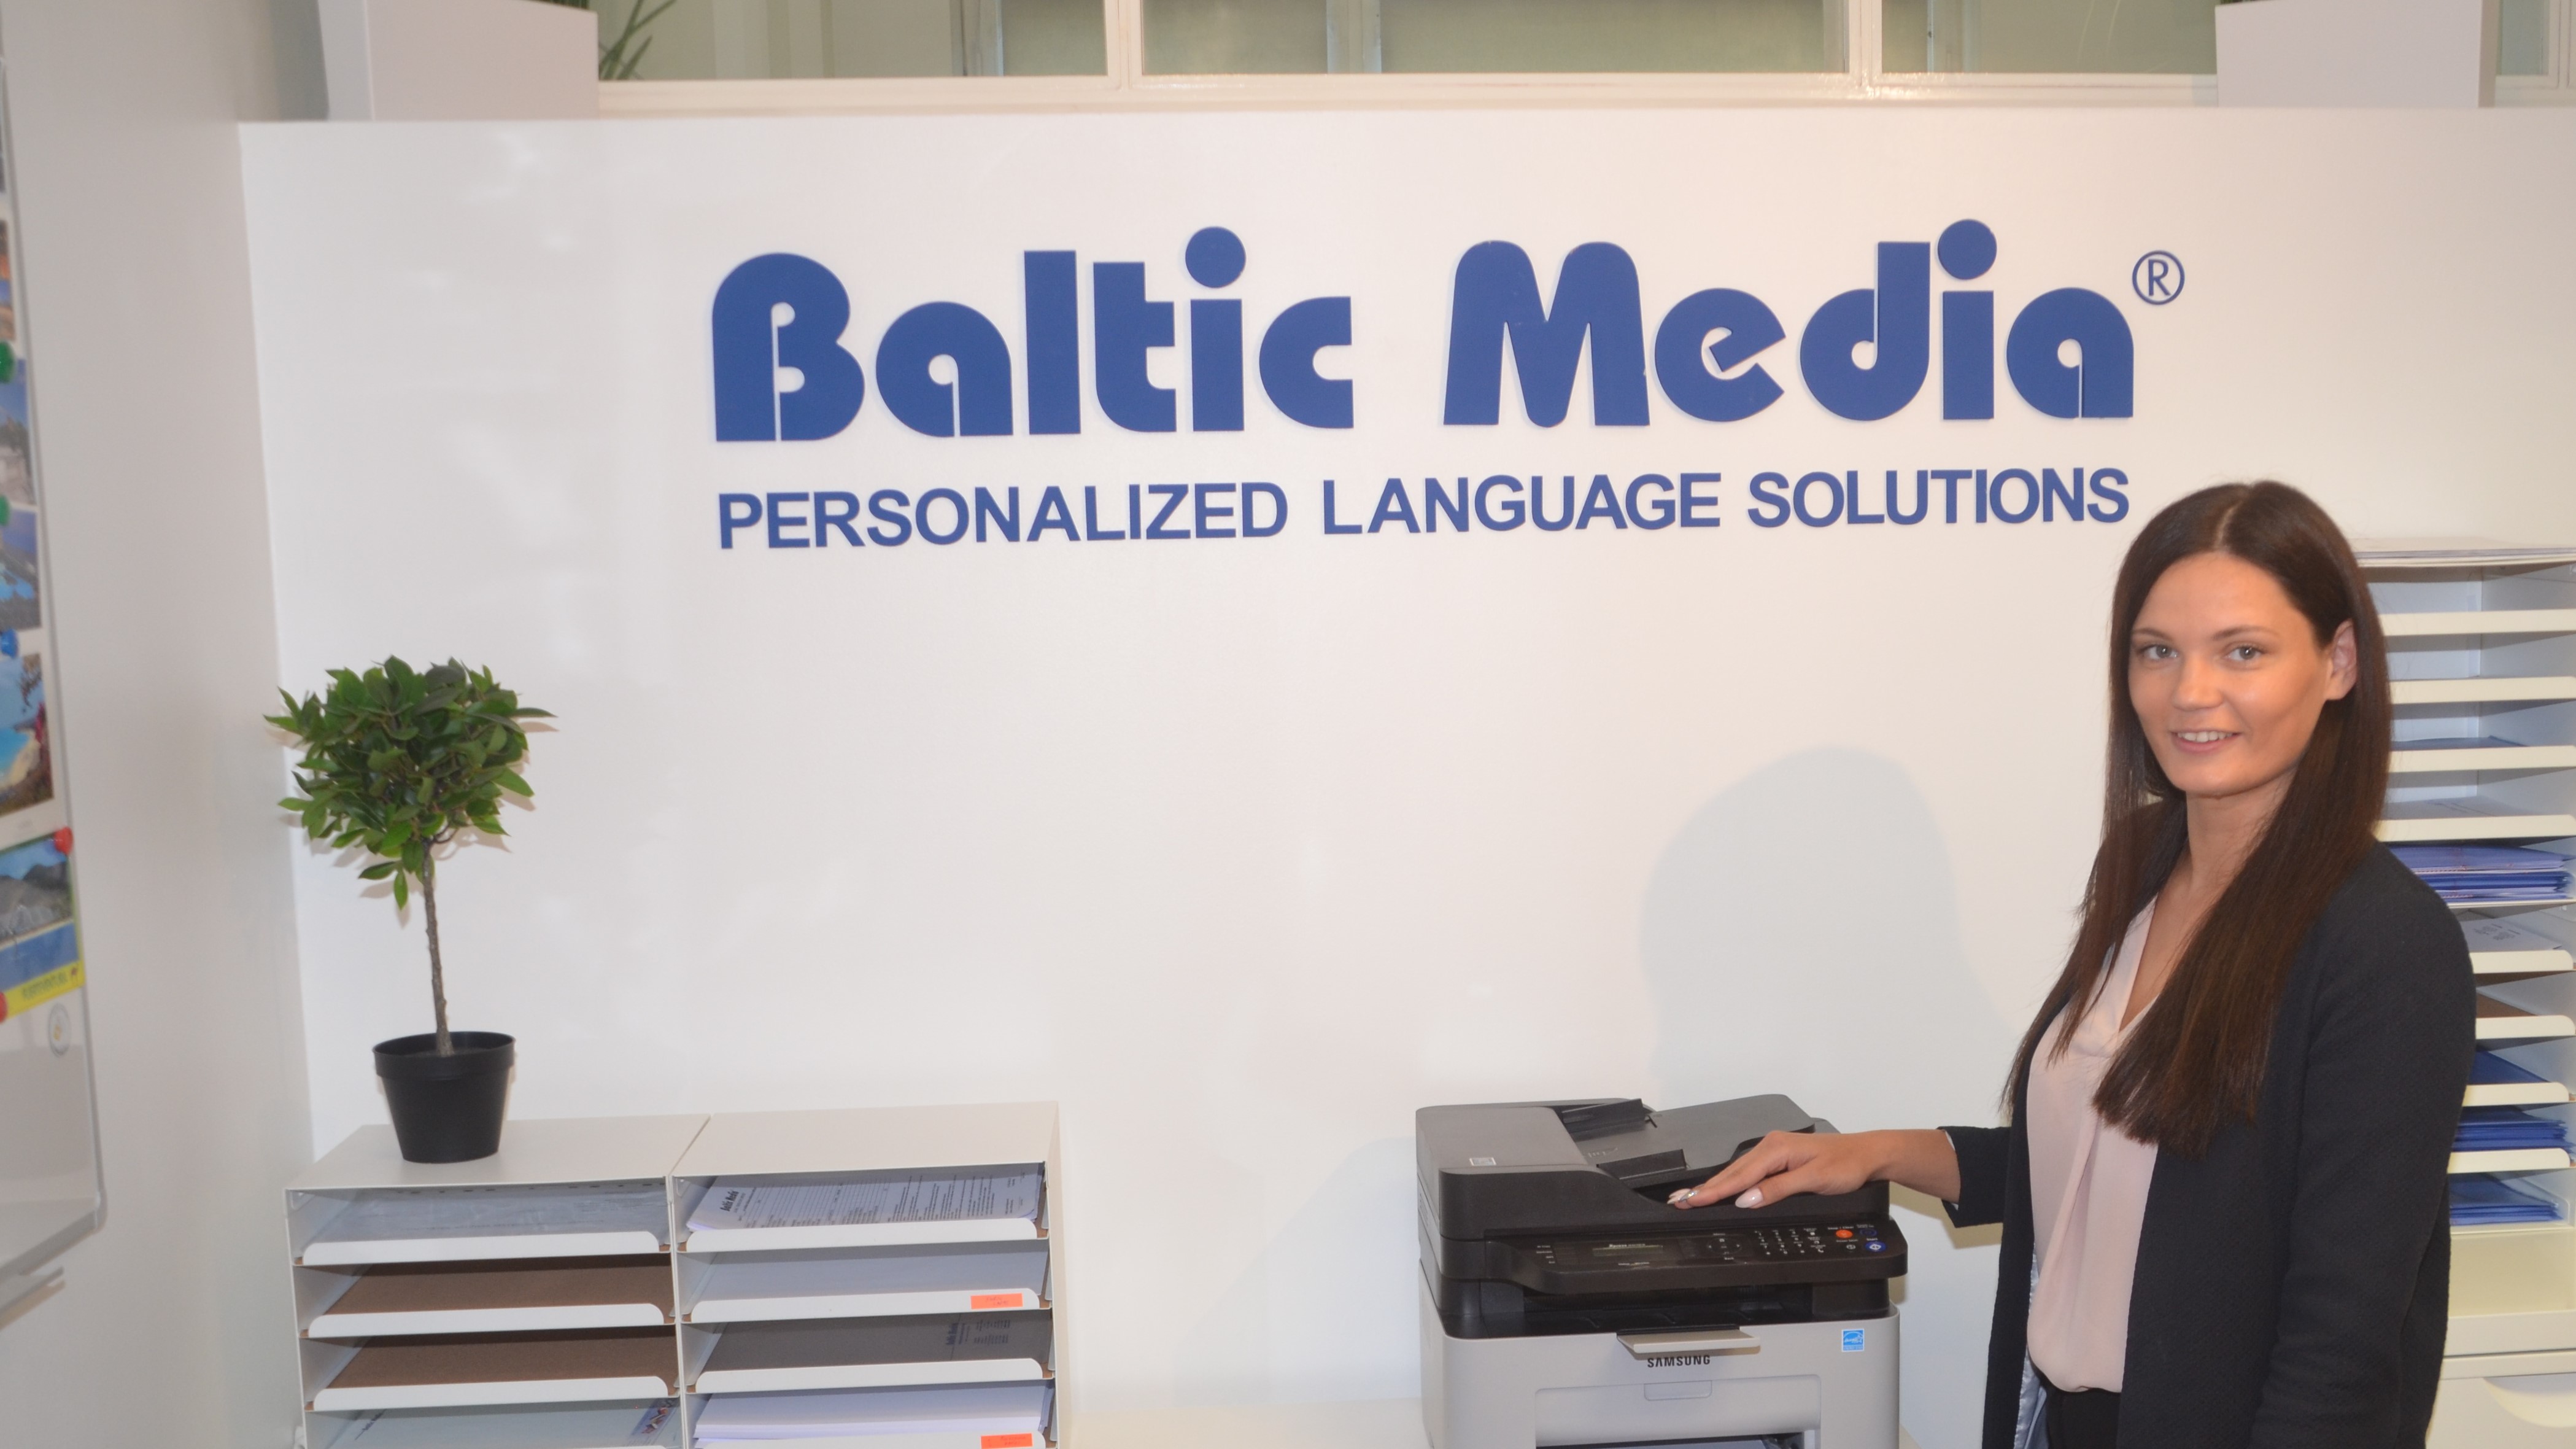 Online ISO sertificēts tulkošanas birojs Baltic Media® | Kad jums svarīgs ātrums un kvalitāte. Latvijā un visā pasaulē.